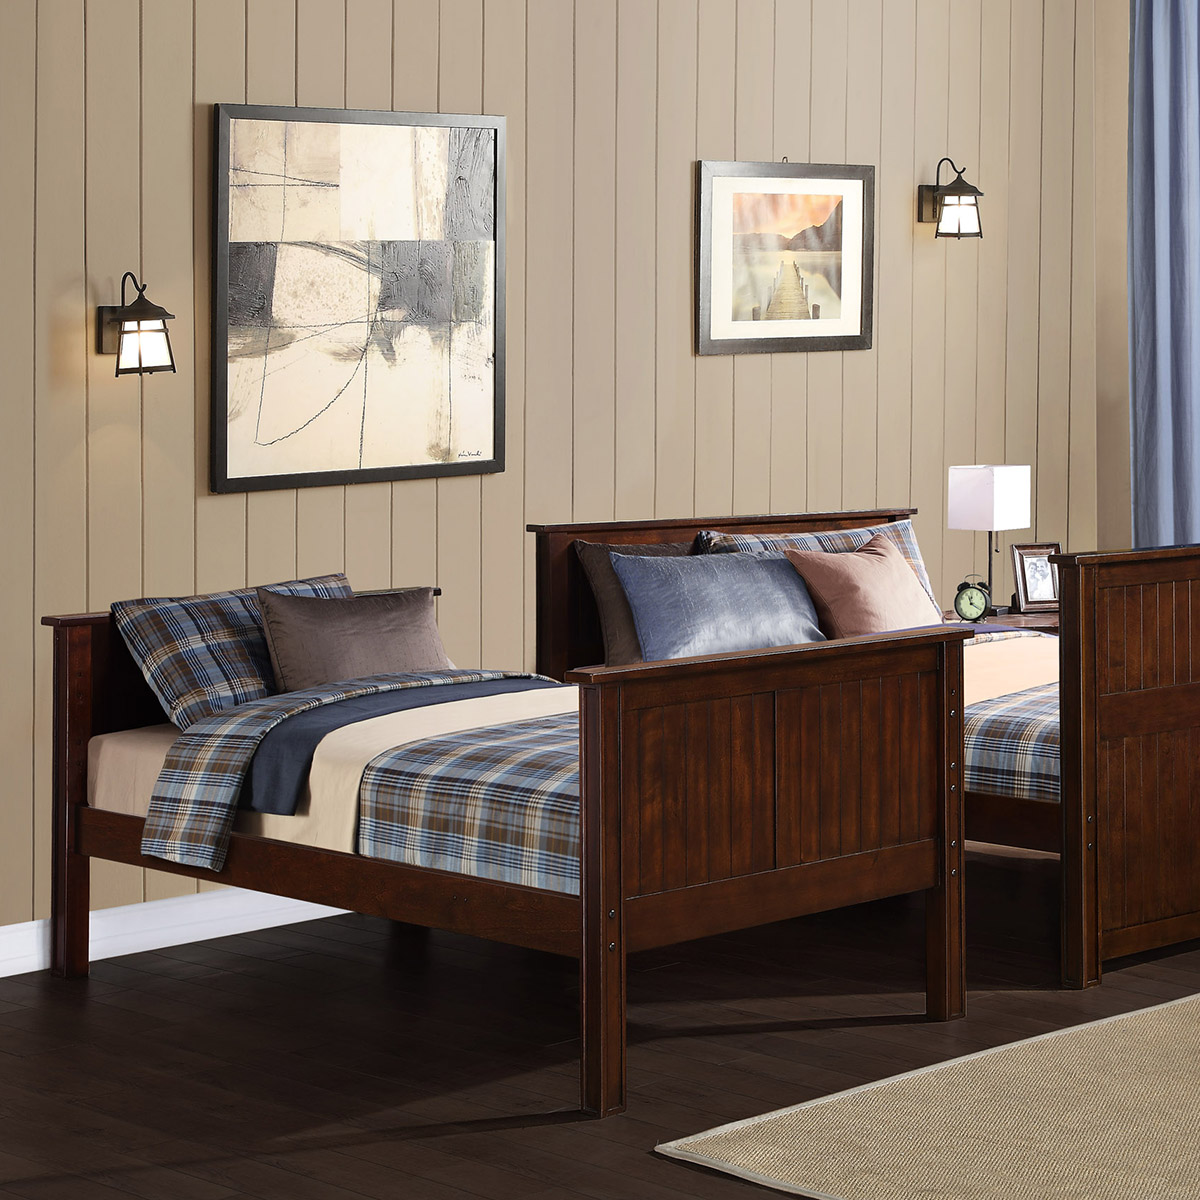 Bayside Furnishings, Bayside Furnishings Bunk Bed Costco